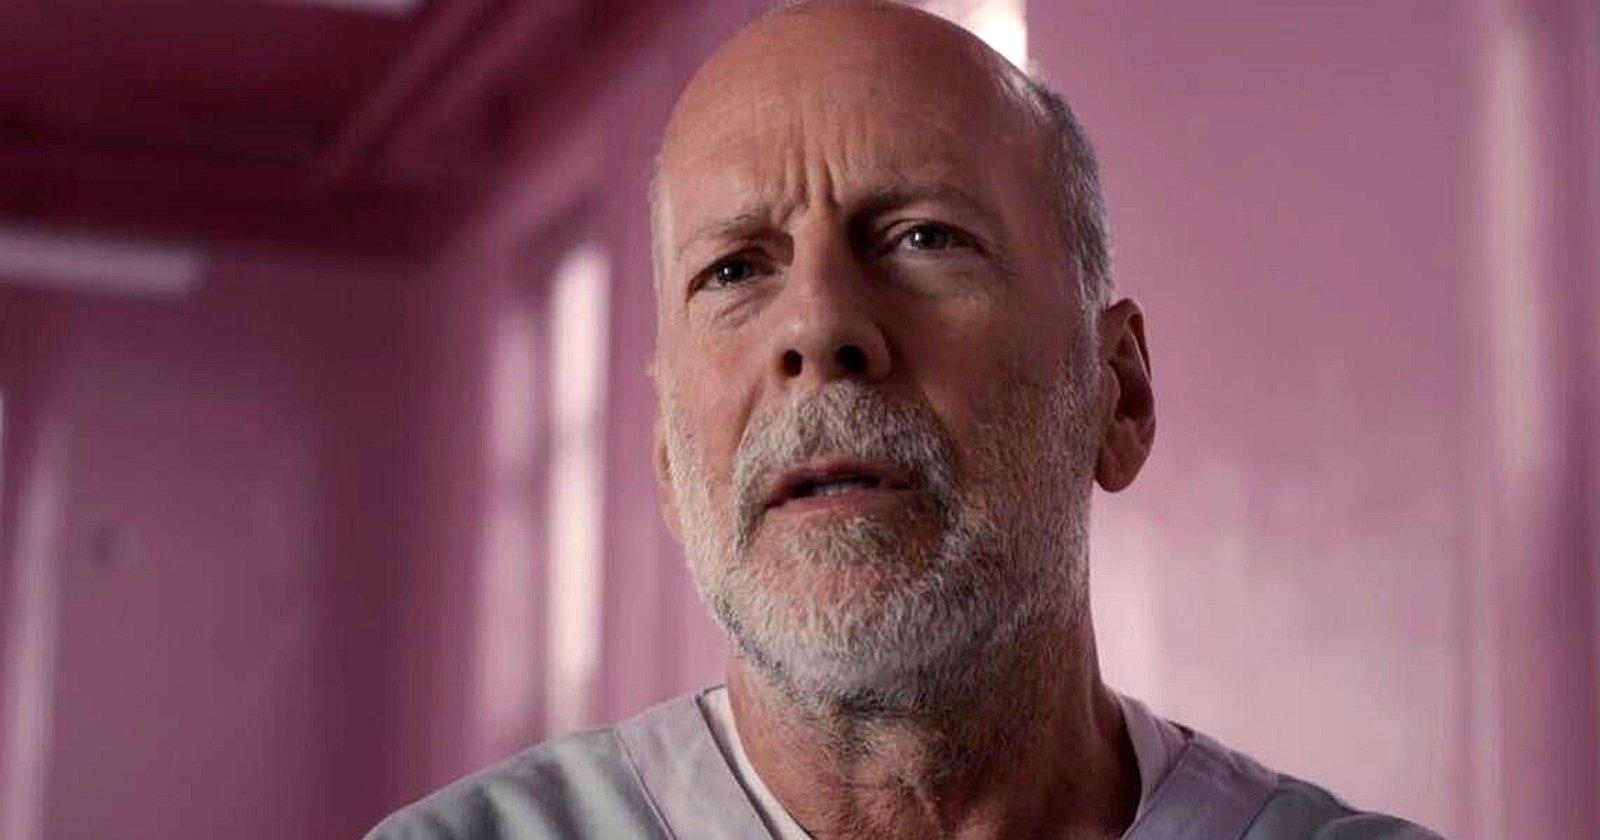 อัปเดตสุขภาพ Bruce Willis ล่าสุดหลังเกษียณไป 1 ปี ตอนนี้สูญเสียทักษะทางภาษาทั้งหมดแล้ว